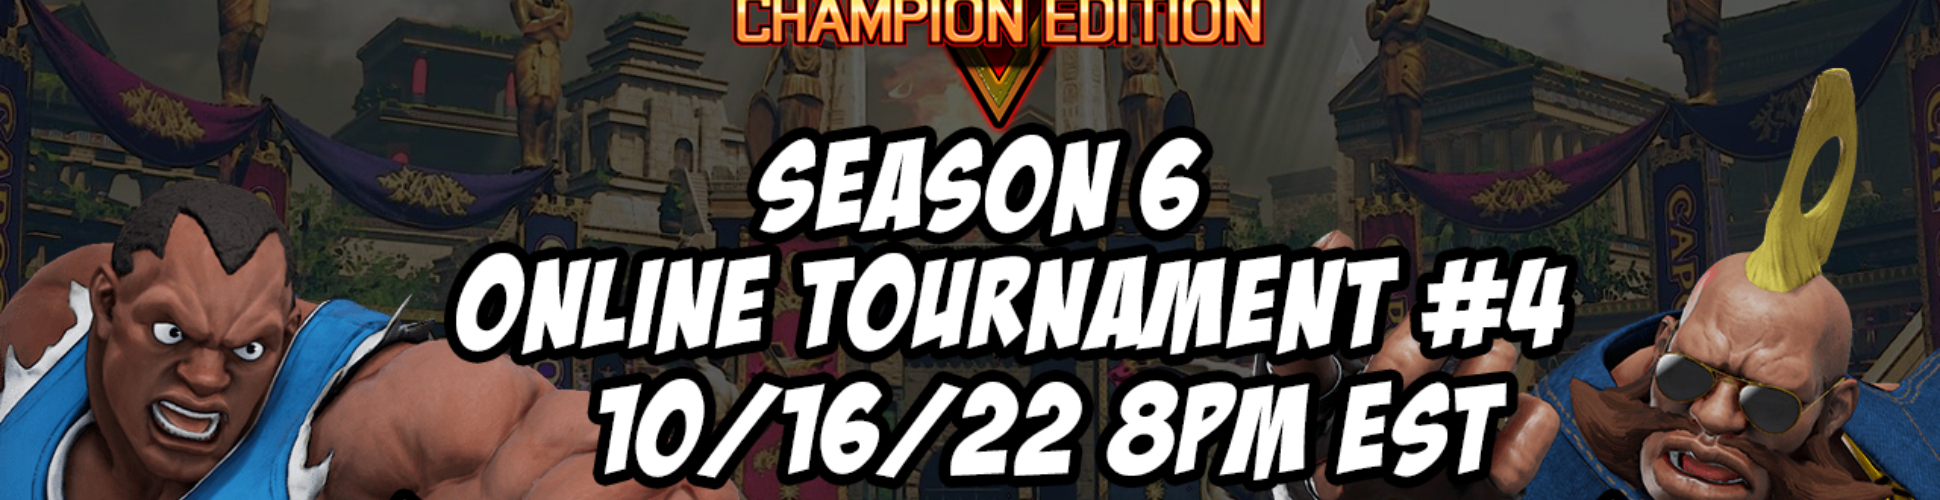 SFV CE Season 6 Online Tournament #4 10/16/22 8pm EST